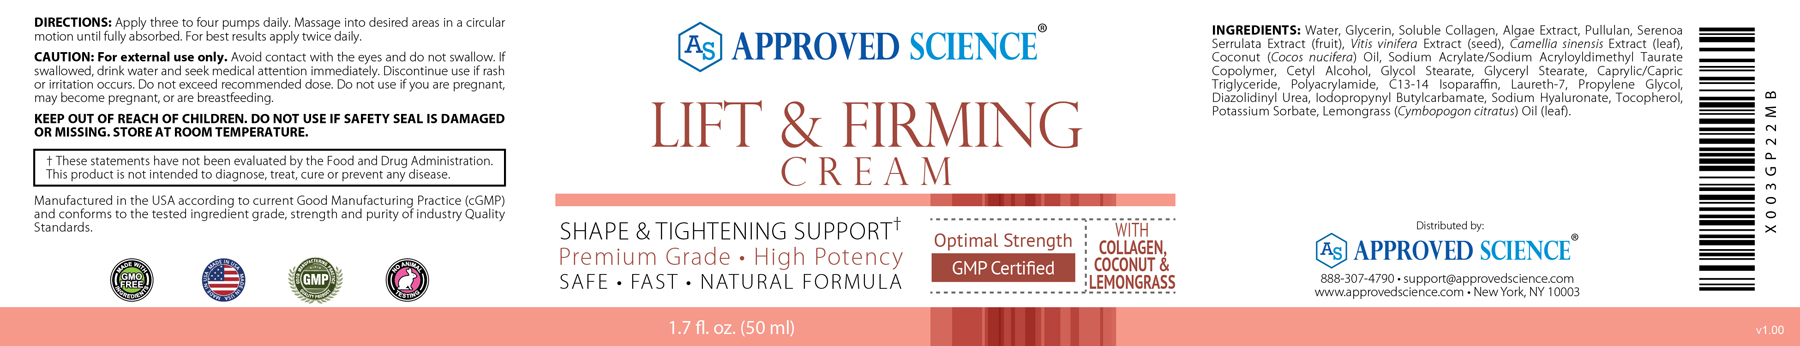 Lift & Firming Cream Supplement Facts